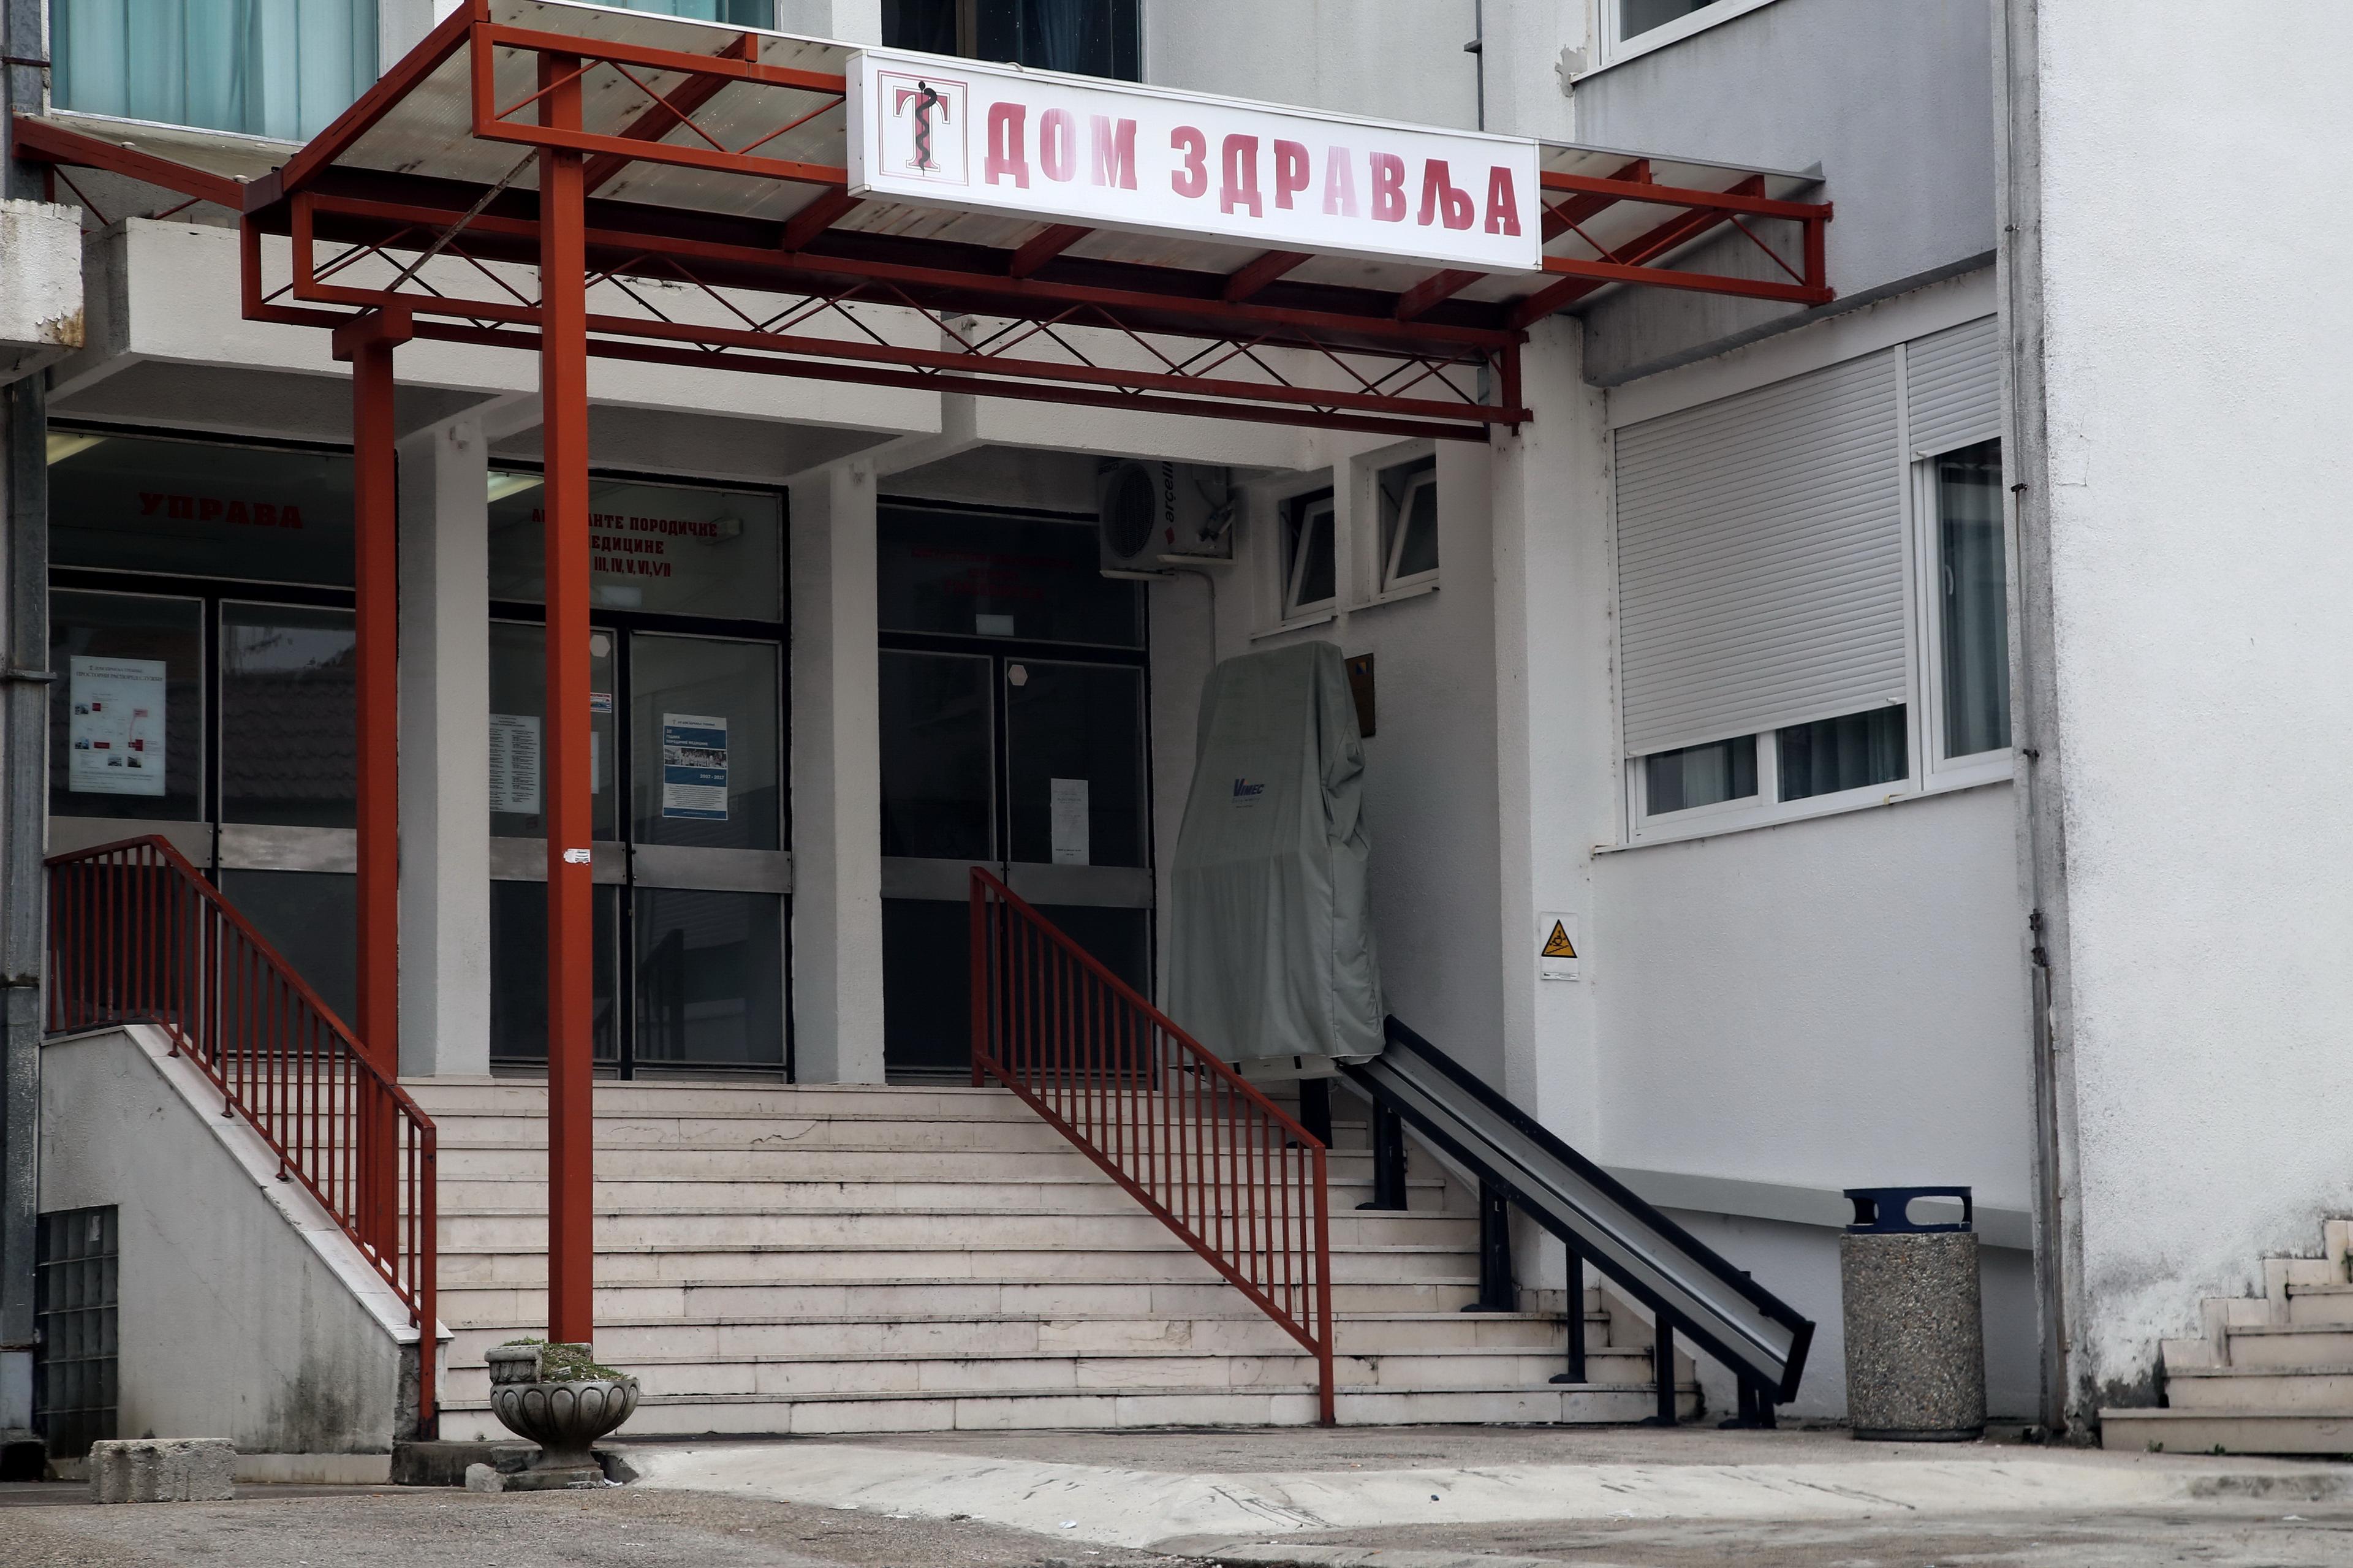 Dom zdravlja u Trebinju: Dnevno po 200 pacijenata - Avaz